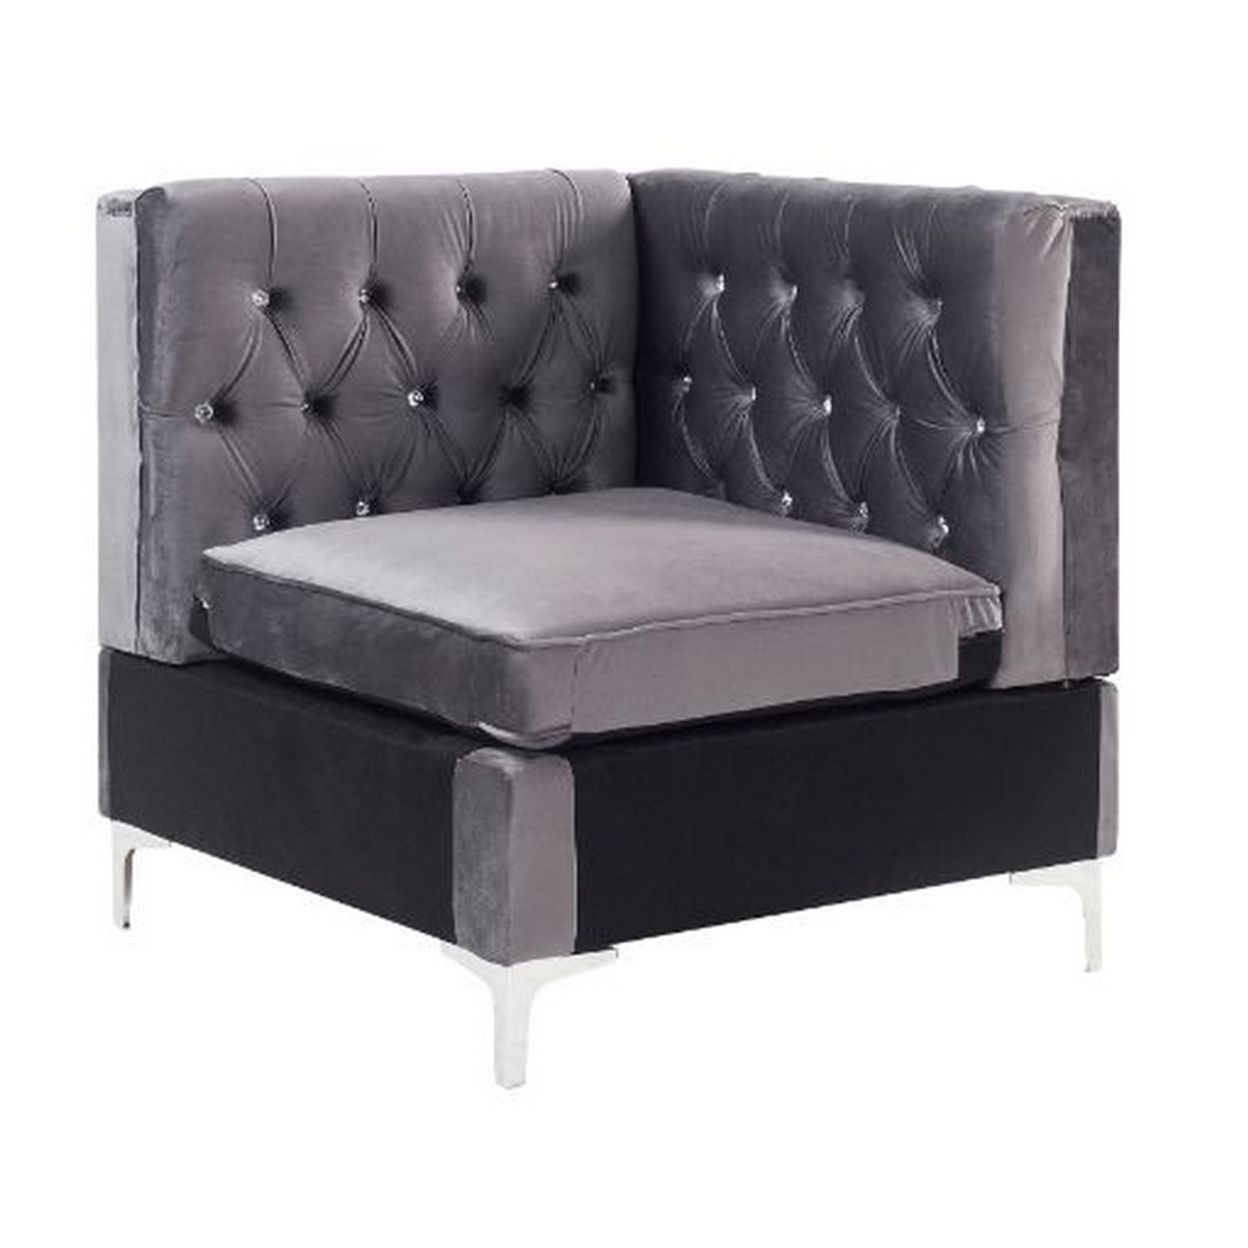 Corner Wedge With Velvet Upholstery And Metal Legs, Gray- Saltoro Sherpi